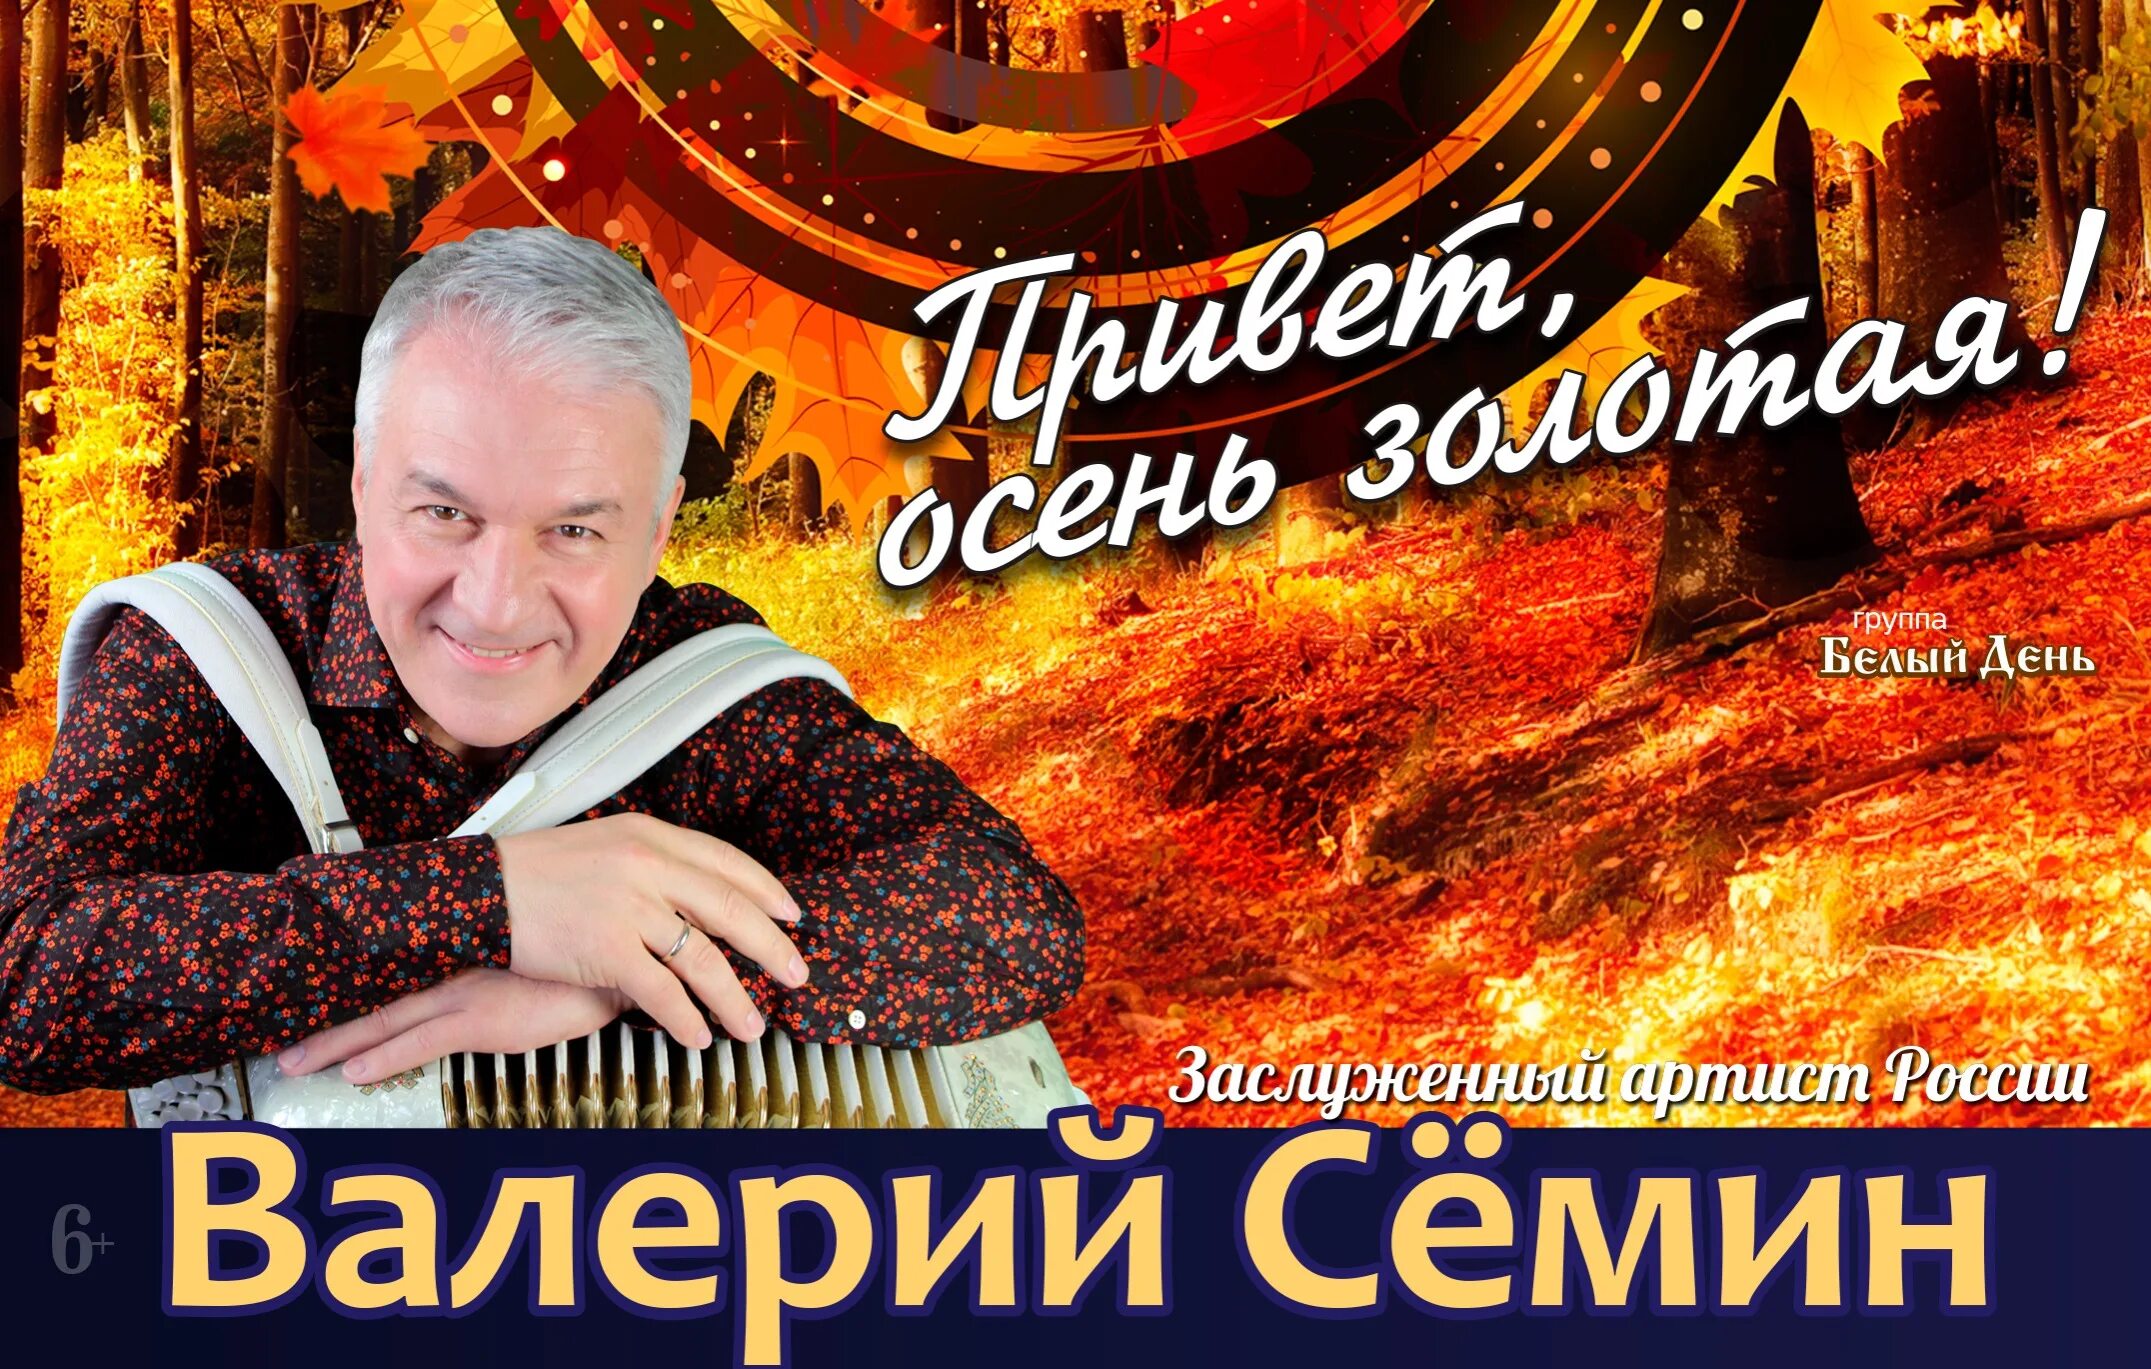 Семин ДК ГАЗ Нижний Новгород. Семин концерт. Цена билета на концерт семина